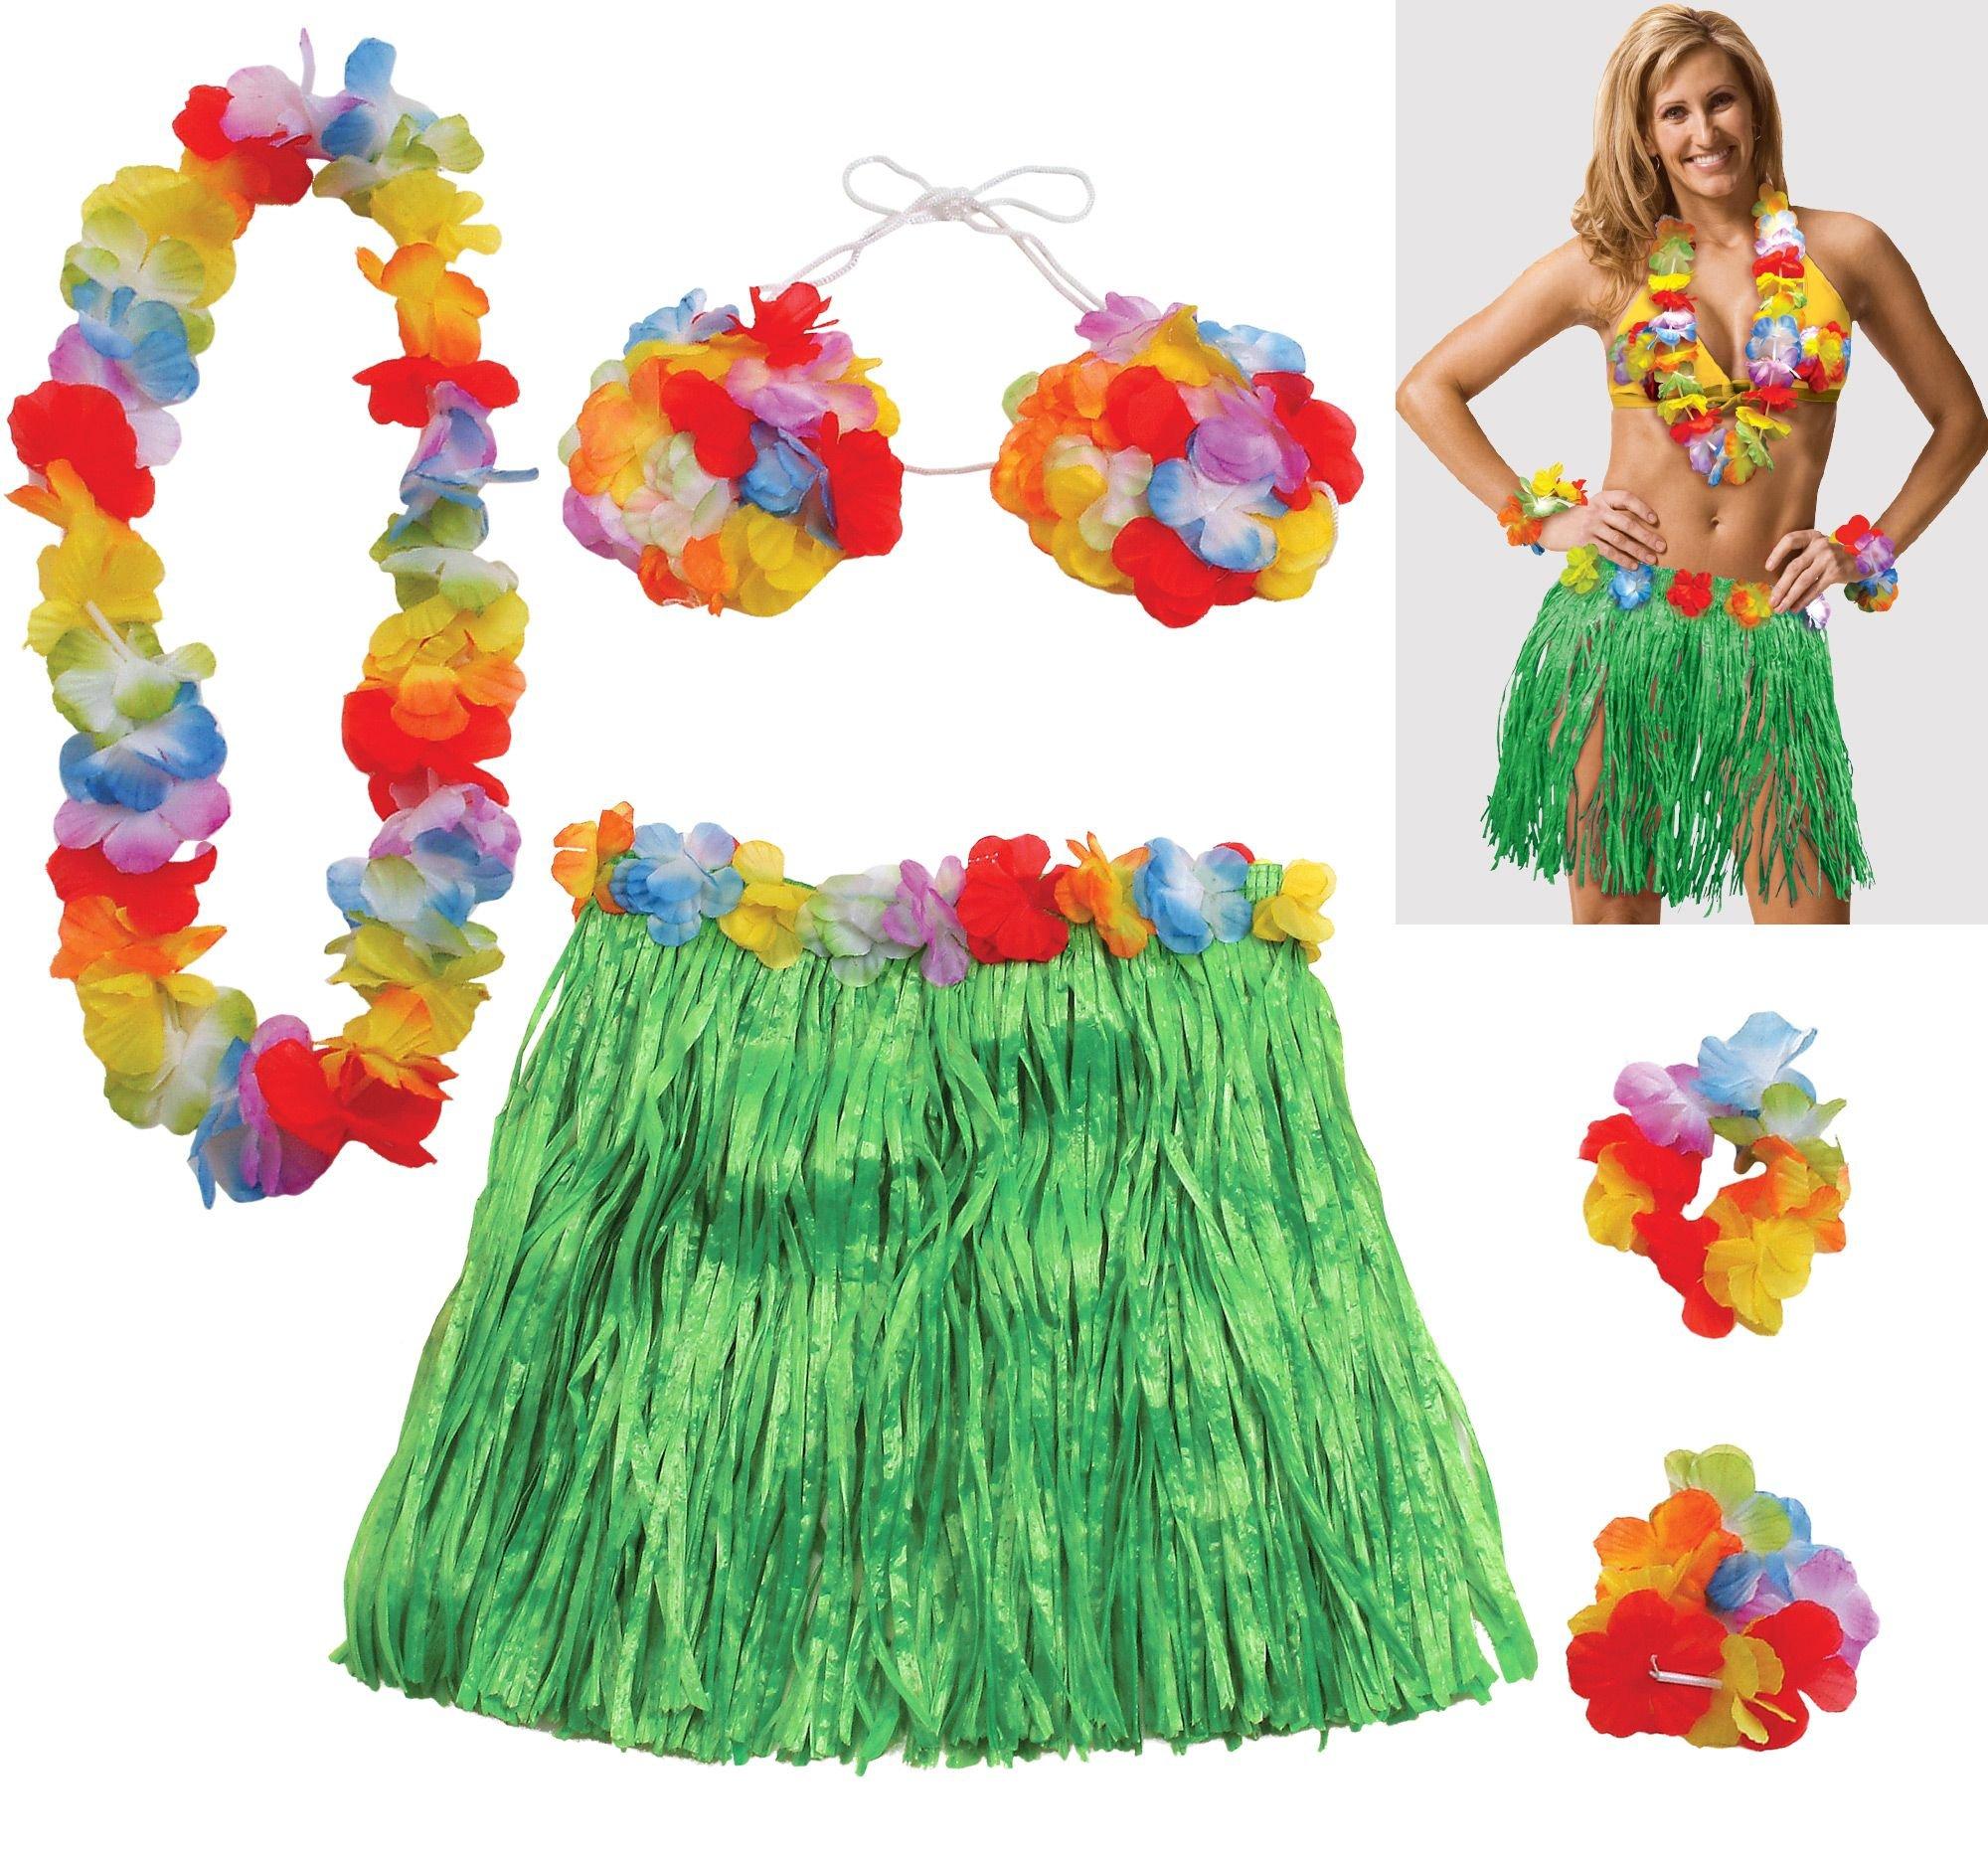 28 Dancer Grass Skirt Party Supplies Hawaii Party Costume Luau Dress Grass  Skirt Costume Hawaiian Party Costume Tropical Grass Skirt Girl Clothes Leaf